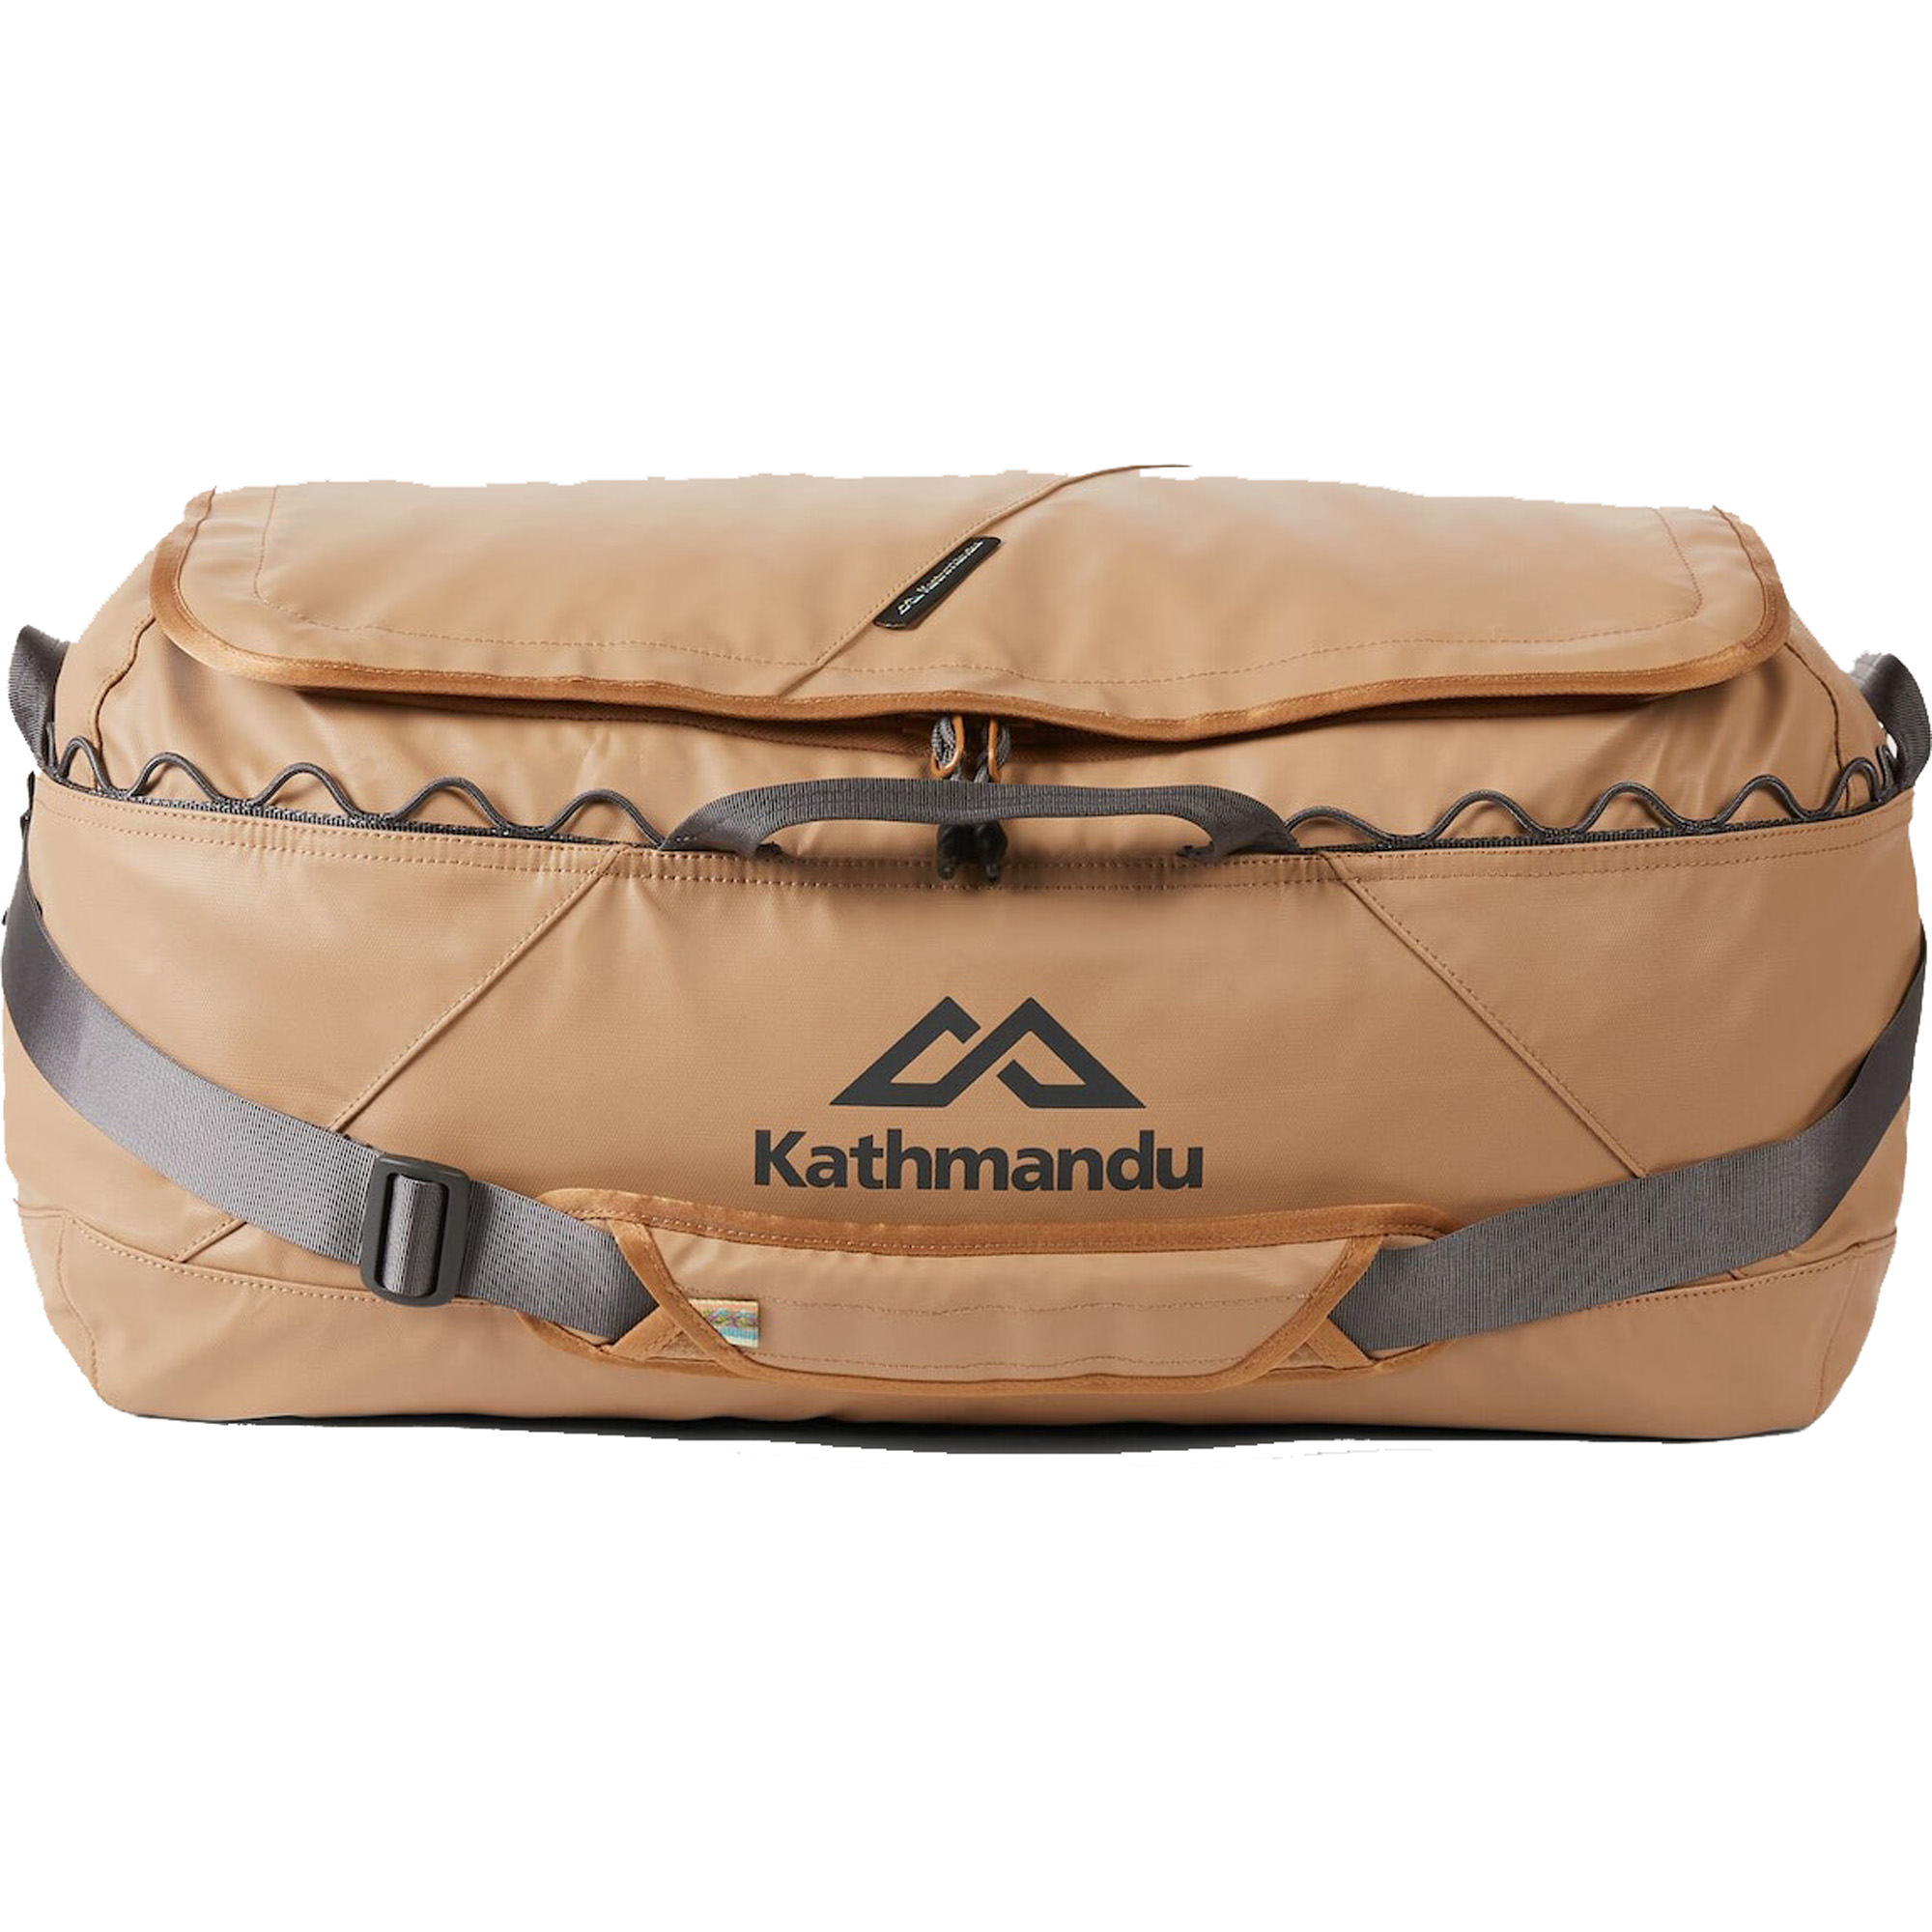 Kathmandu Indus 50 Waterproof Duffel Bag